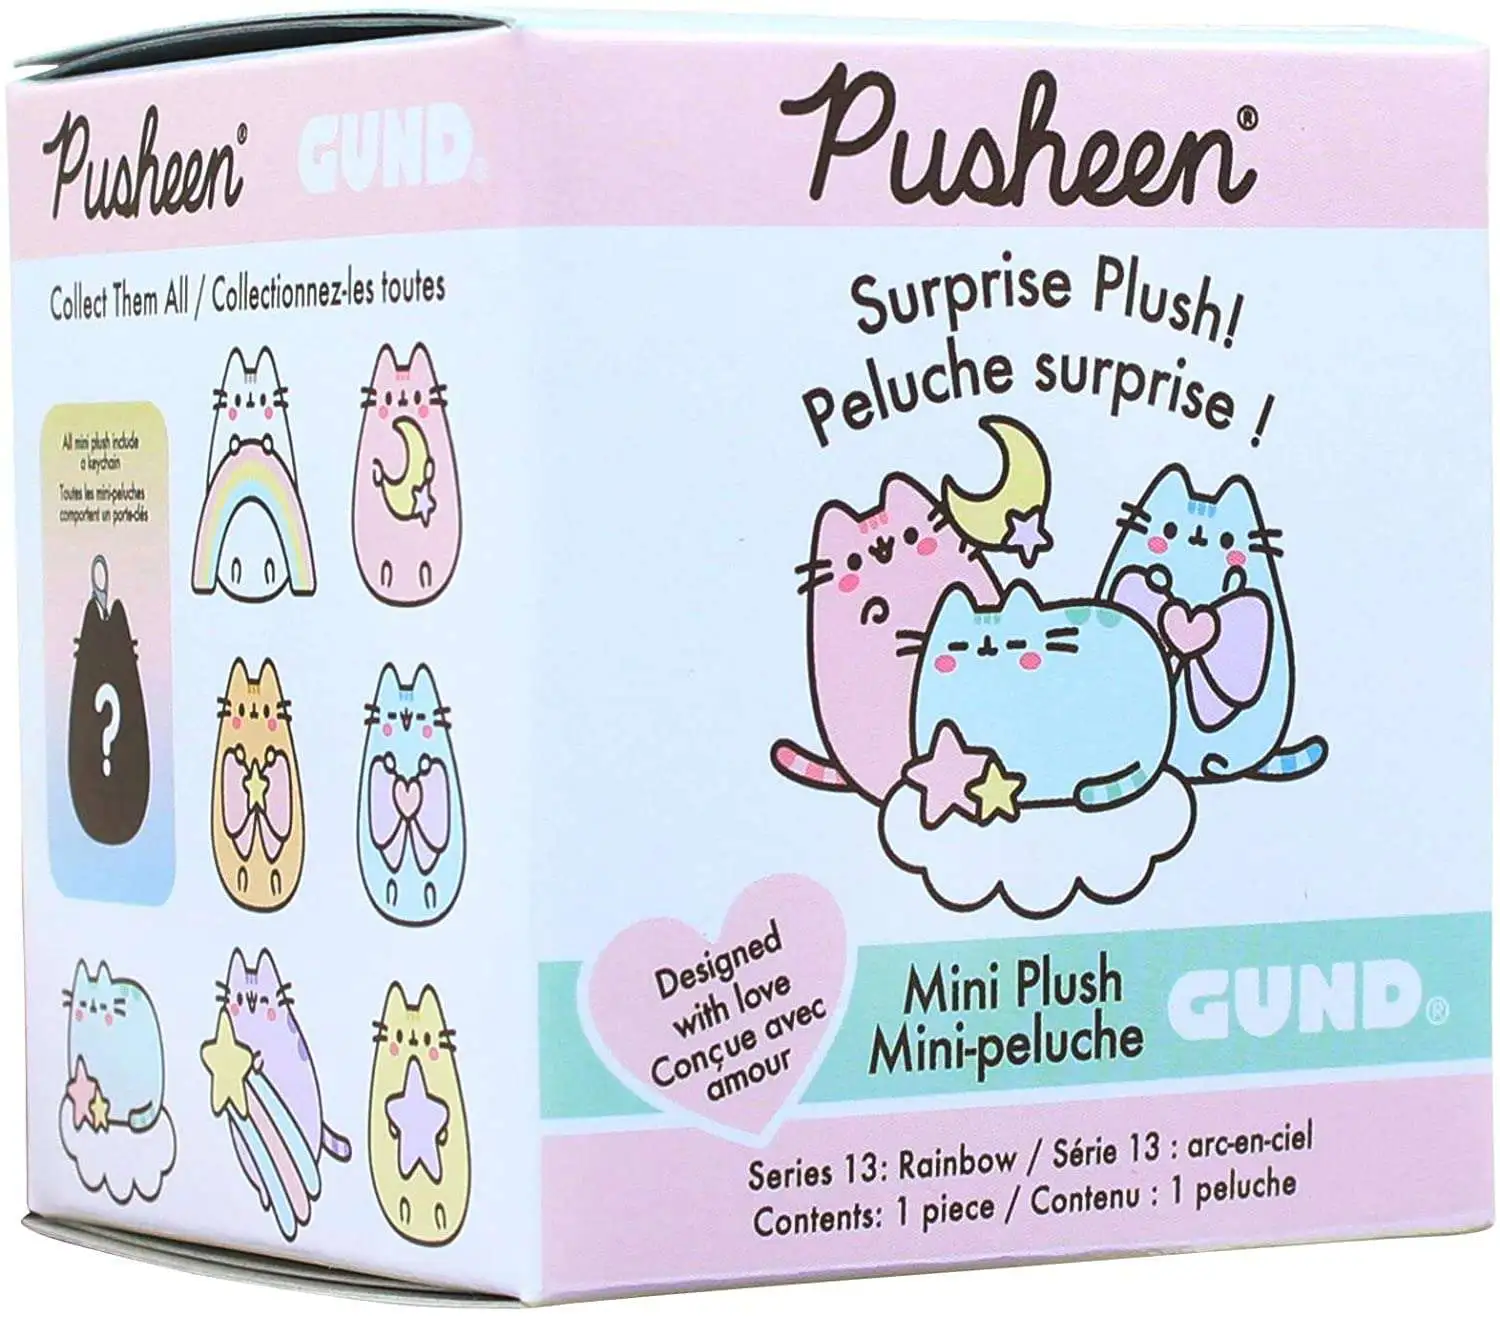 Gund NEW Pusheen Blind Box PINK MOON Rainbow Opened Plush Cat Series 13 